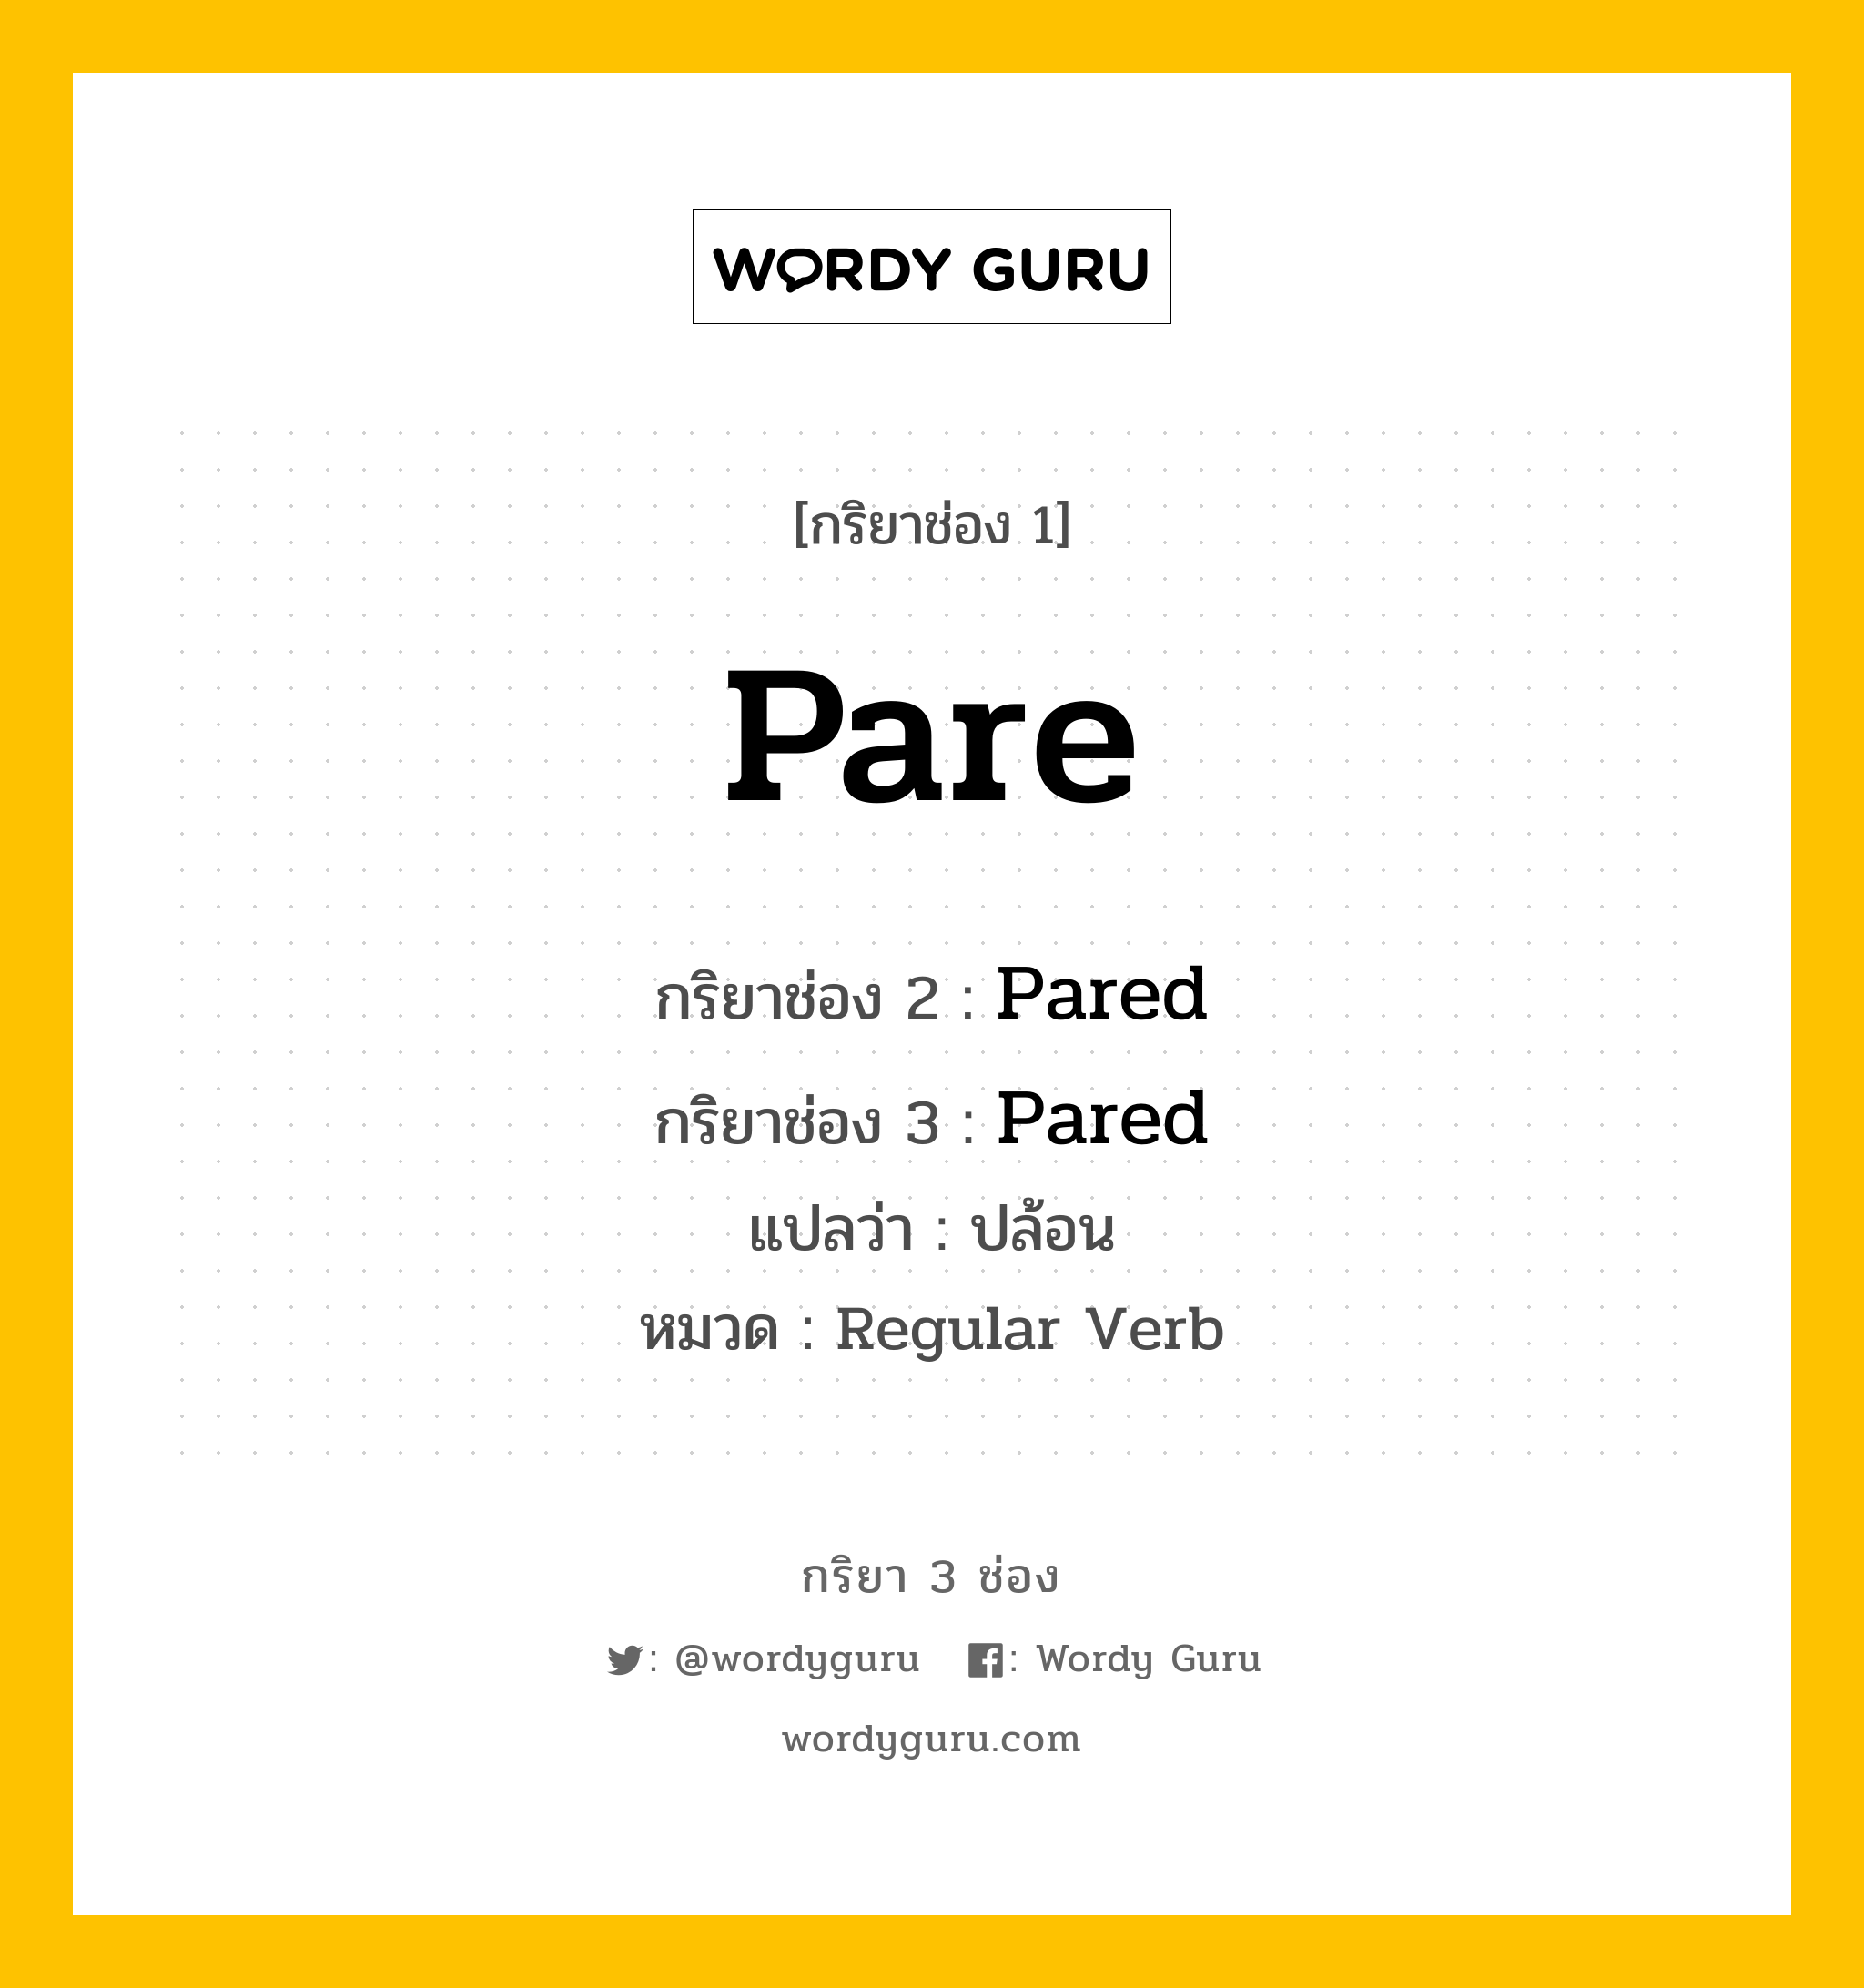 กริยา 3 ช่อง ของ Pare คืออะไร? มาดูคำอ่าน คำแปลกันเลย, กริยาช่อง 1 Pare กริยาช่อง 2 Pared กริยาช่อง 3 Pared แปลว่า ปล้อน หมวด Regular Verb หมวด Regular Verb